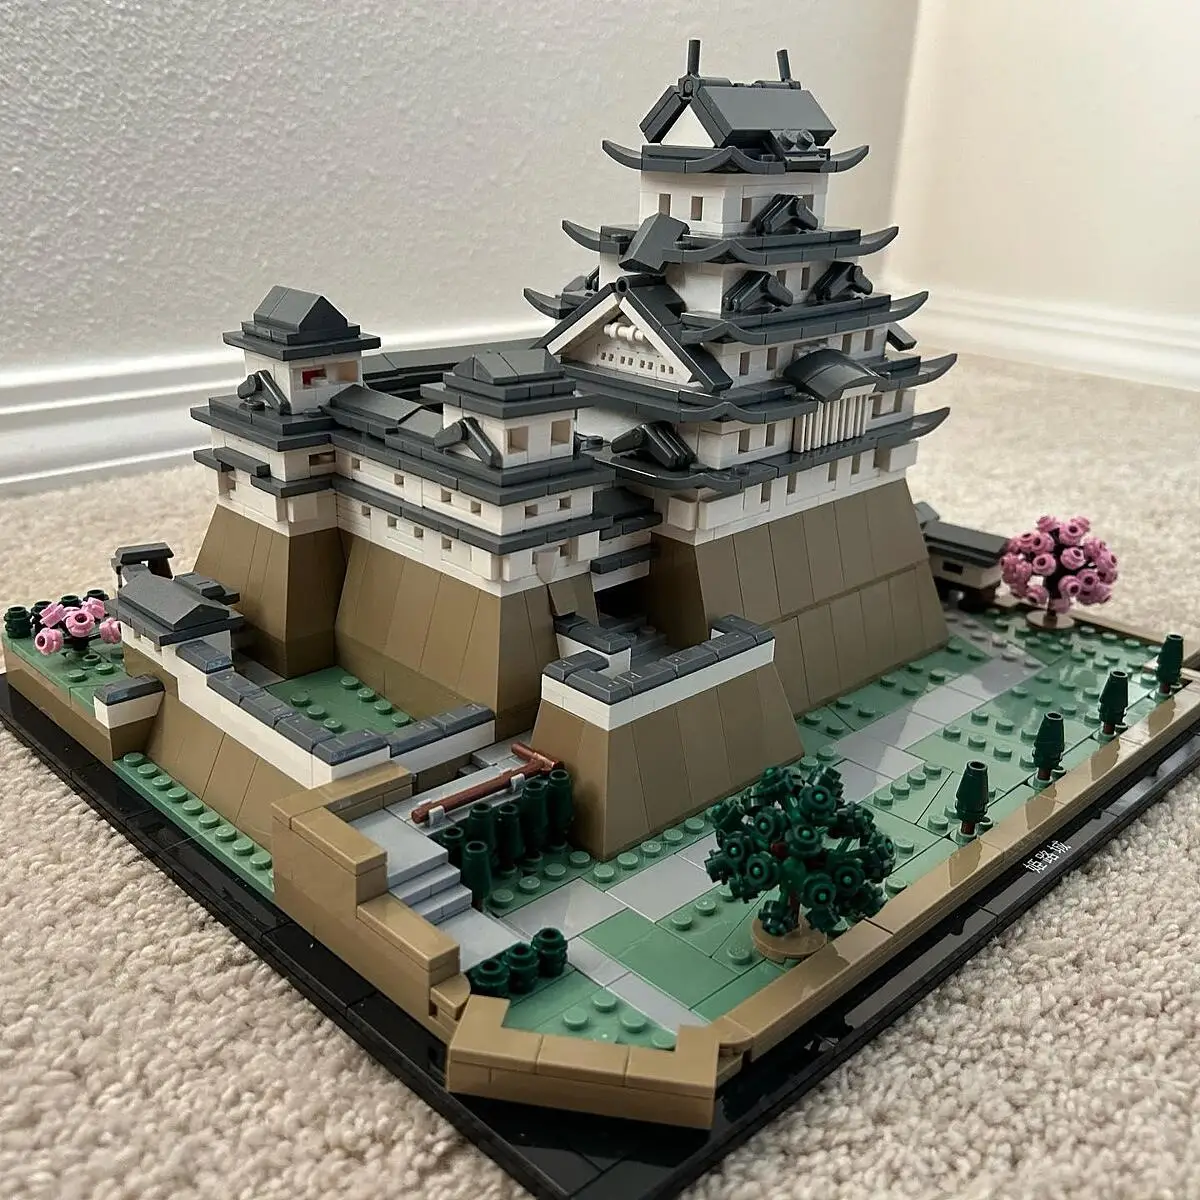 LEGO® Architecture - Le château d'Himeji - 21060 au meilleur prix